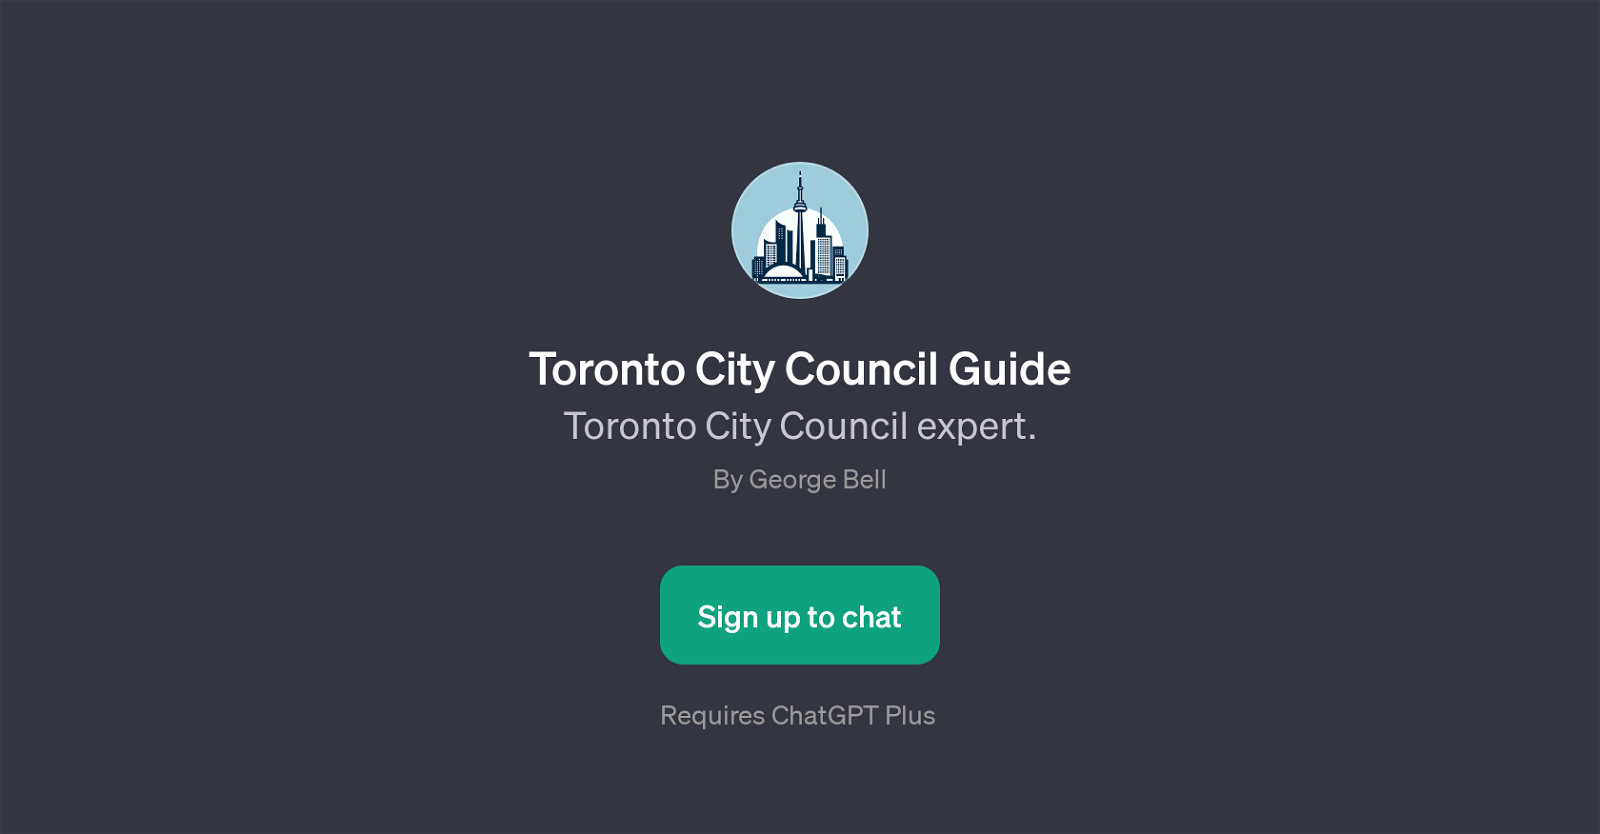 Toronto City Council Guide website